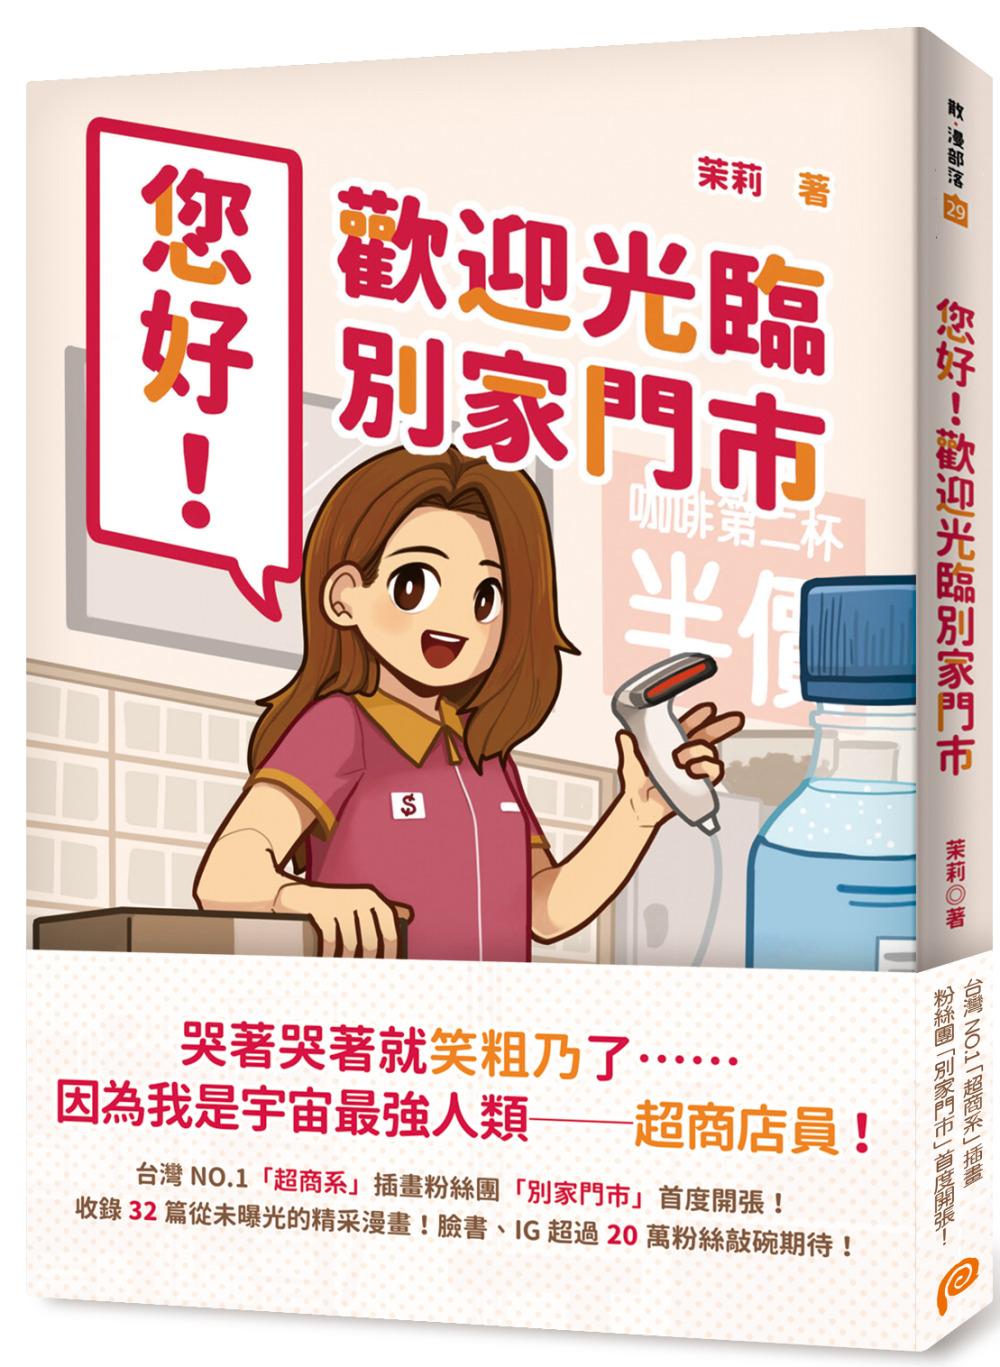 您好！歡迎光臨別家門市：台灣NO.1「超商系」插畫粉絲團「別...